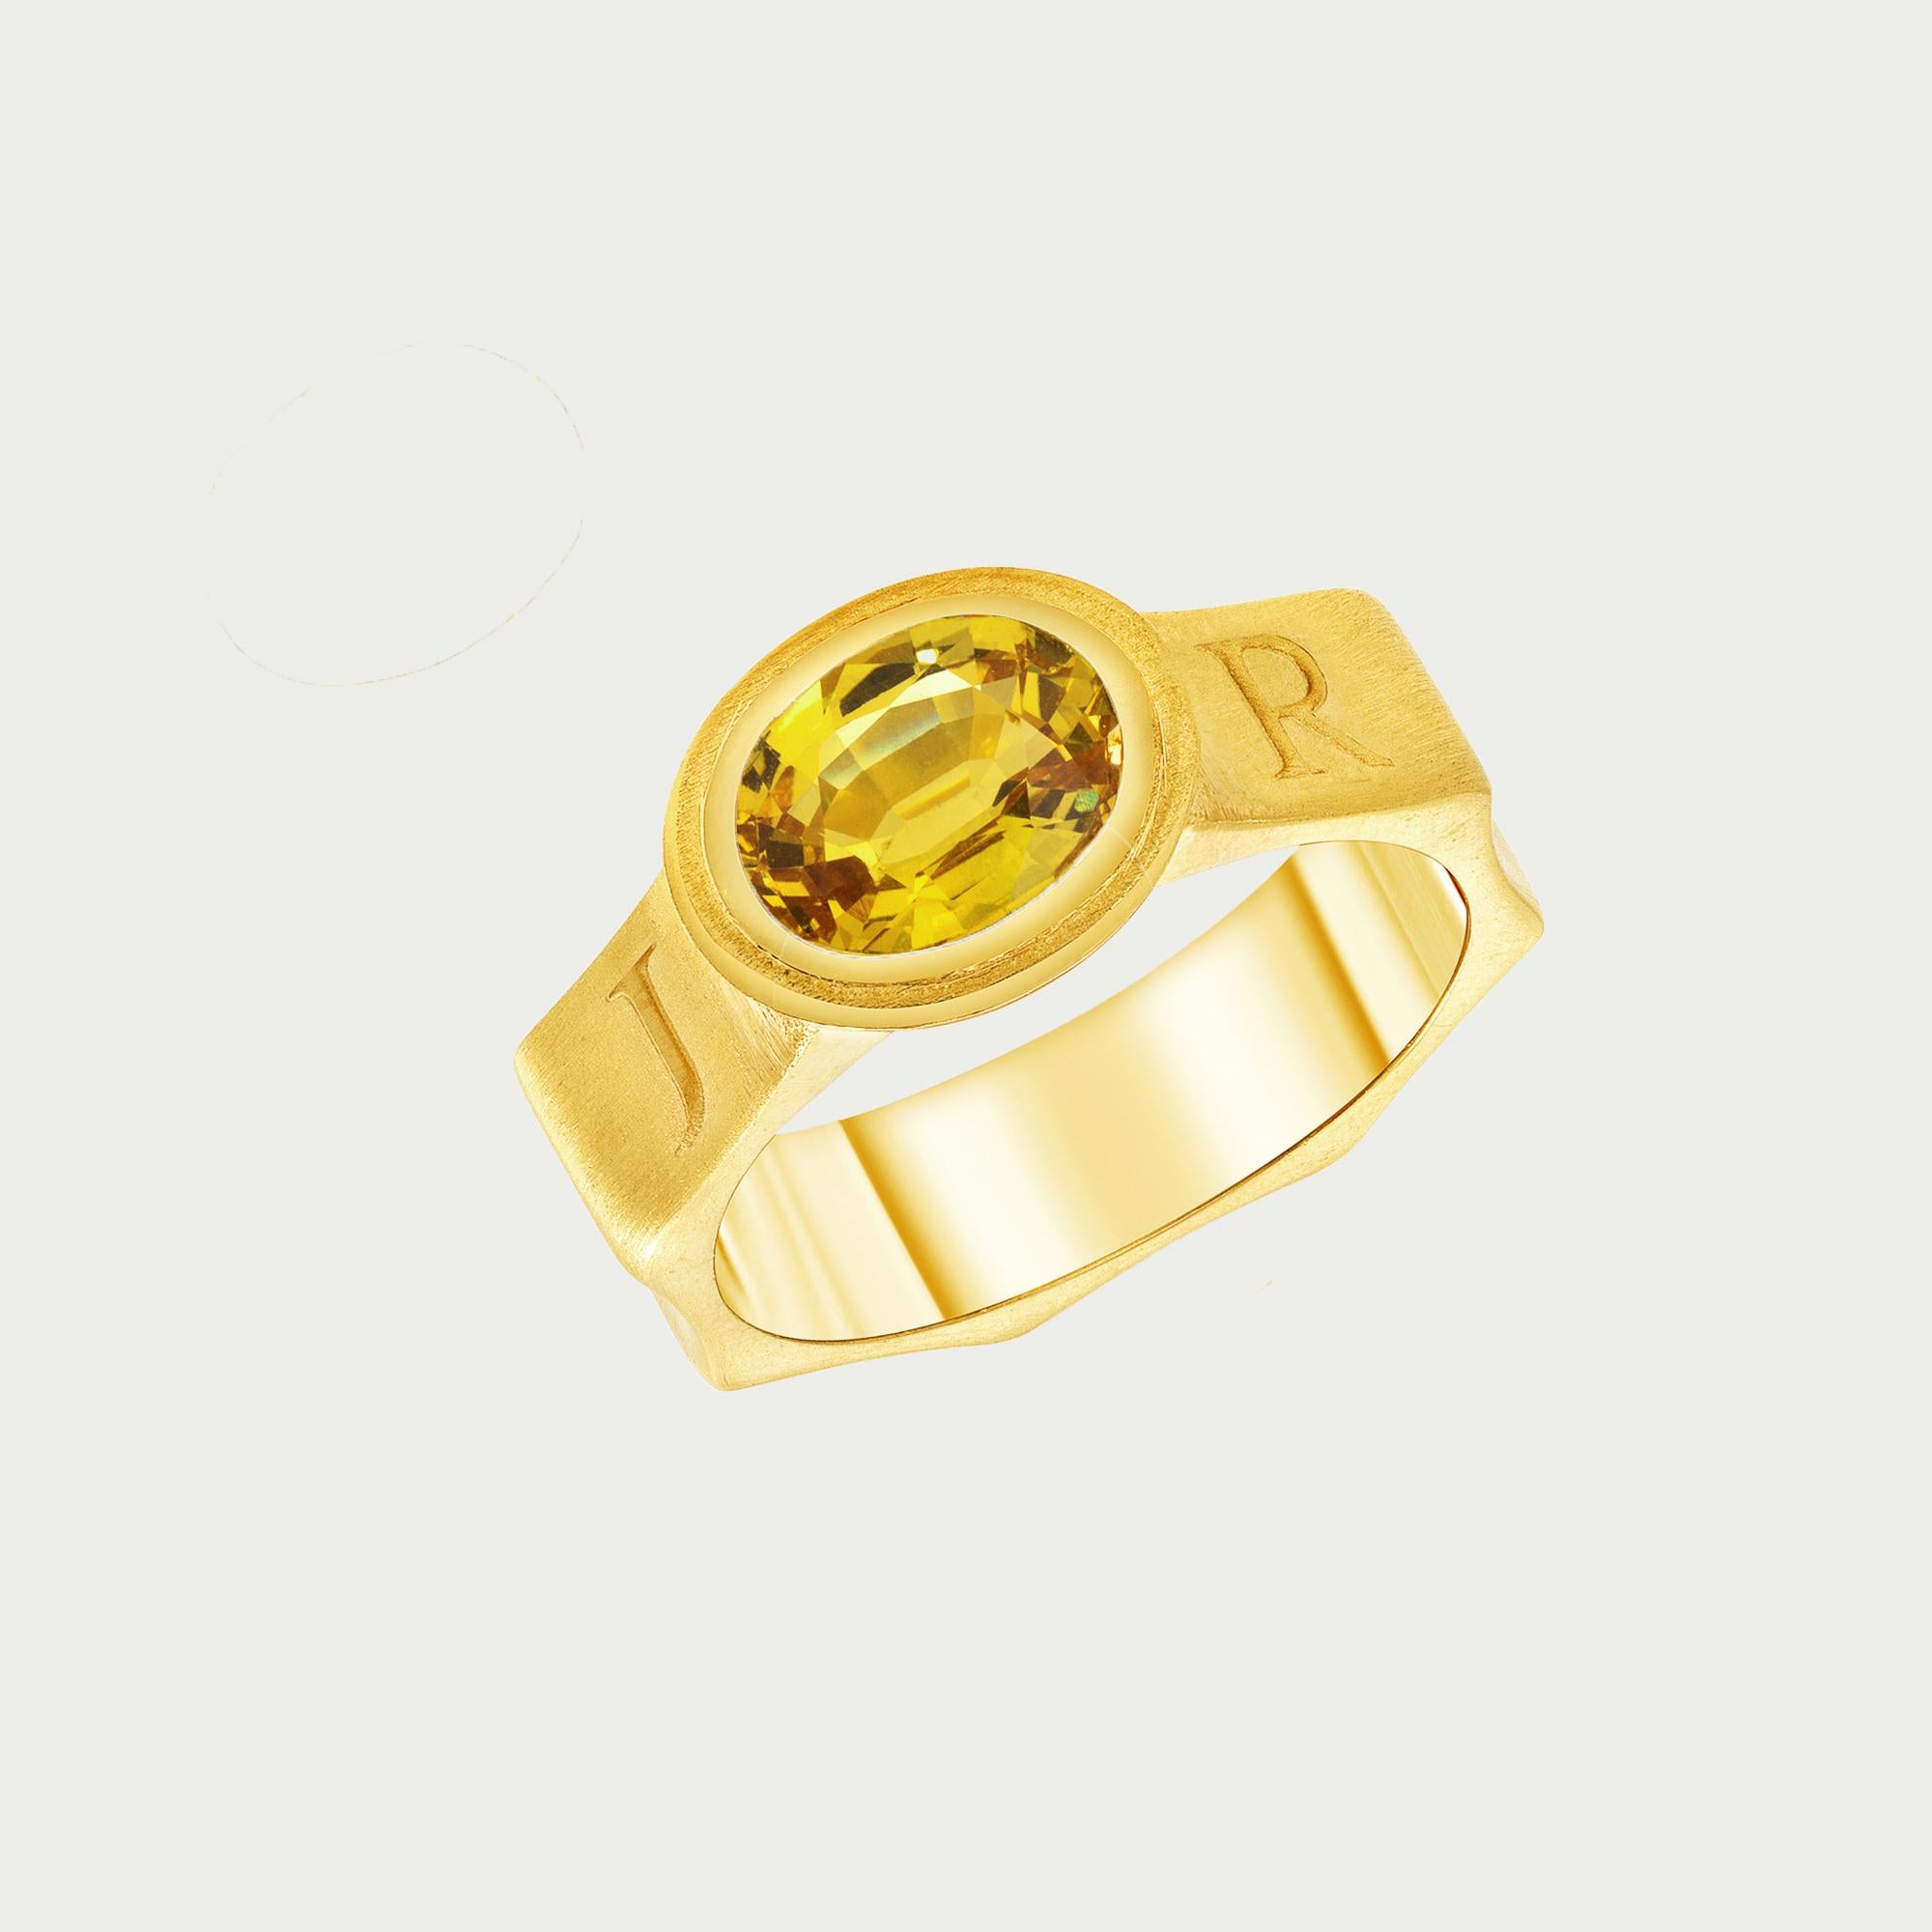 Gelber Saphir Jyoti Ring in 14 Karat Gelbgold 

Dieser einzigartige Ring enthält einen ovalen gelben Saphir von 2,3 Karat, der in 14-karätiges Gelbgold gefasst ist. Das Band im mittelalterlichen Stil hat eine achteckige Form, und rund um das Band